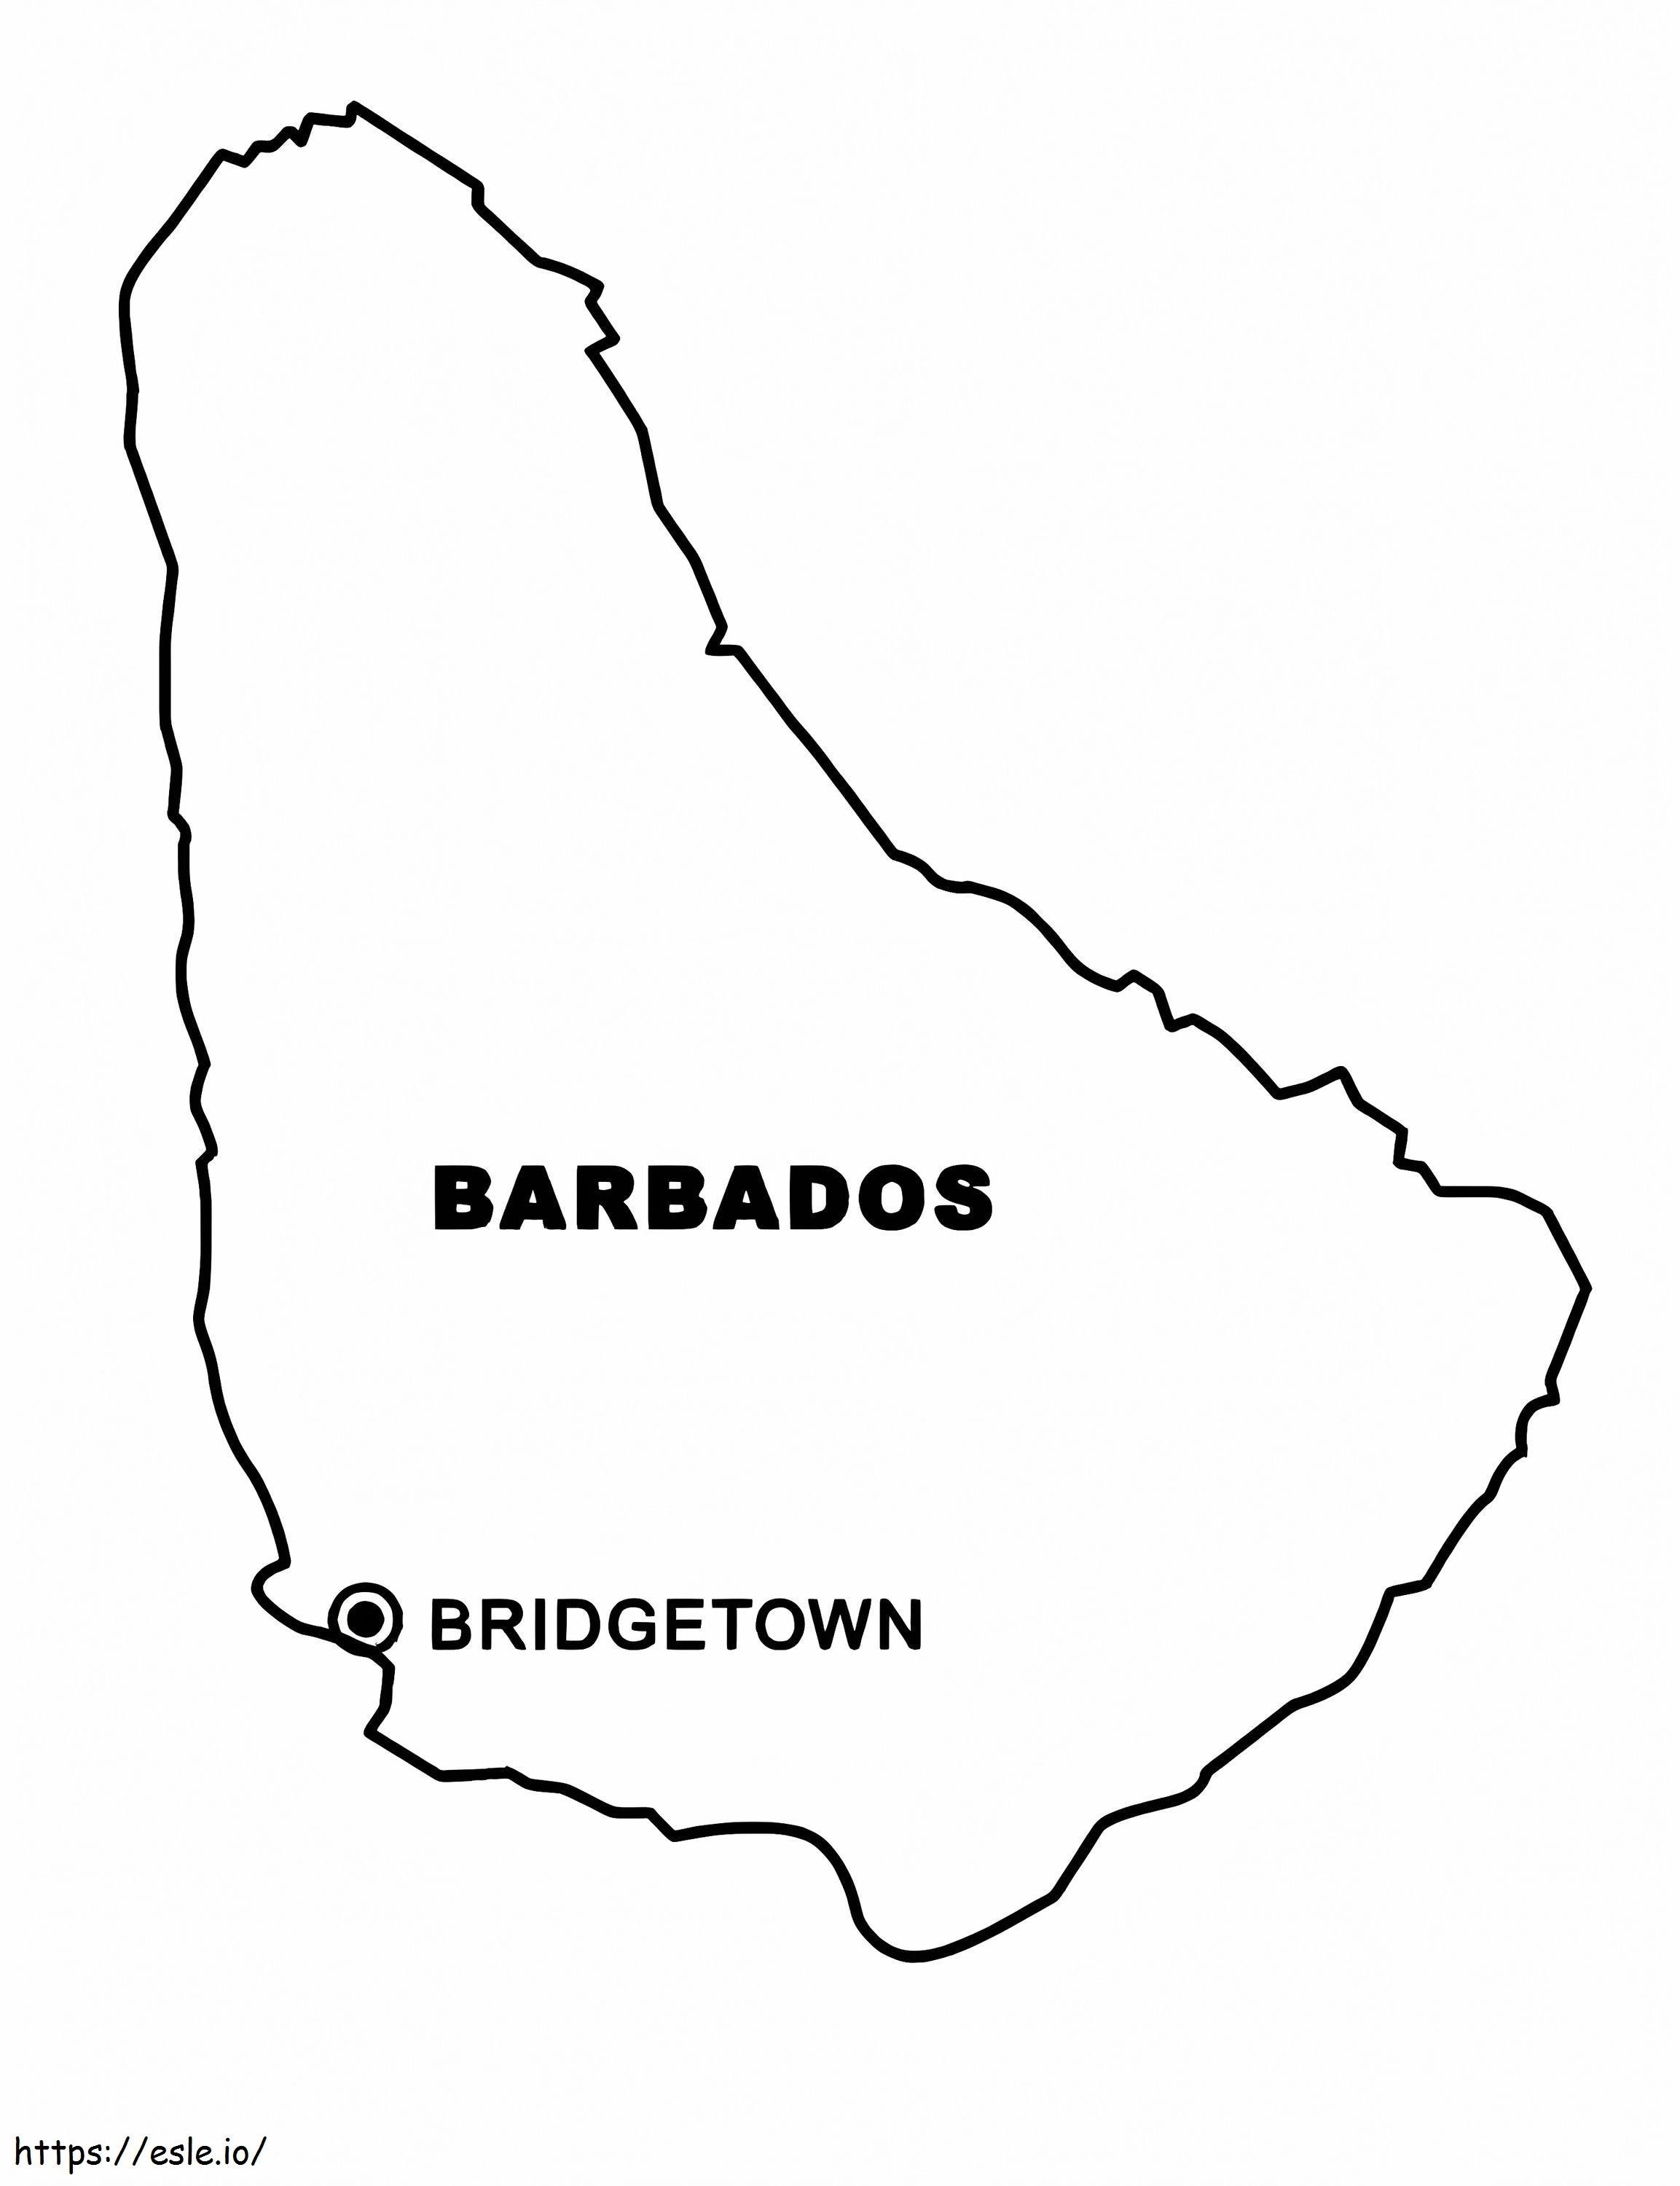 Barbados Map coloring page